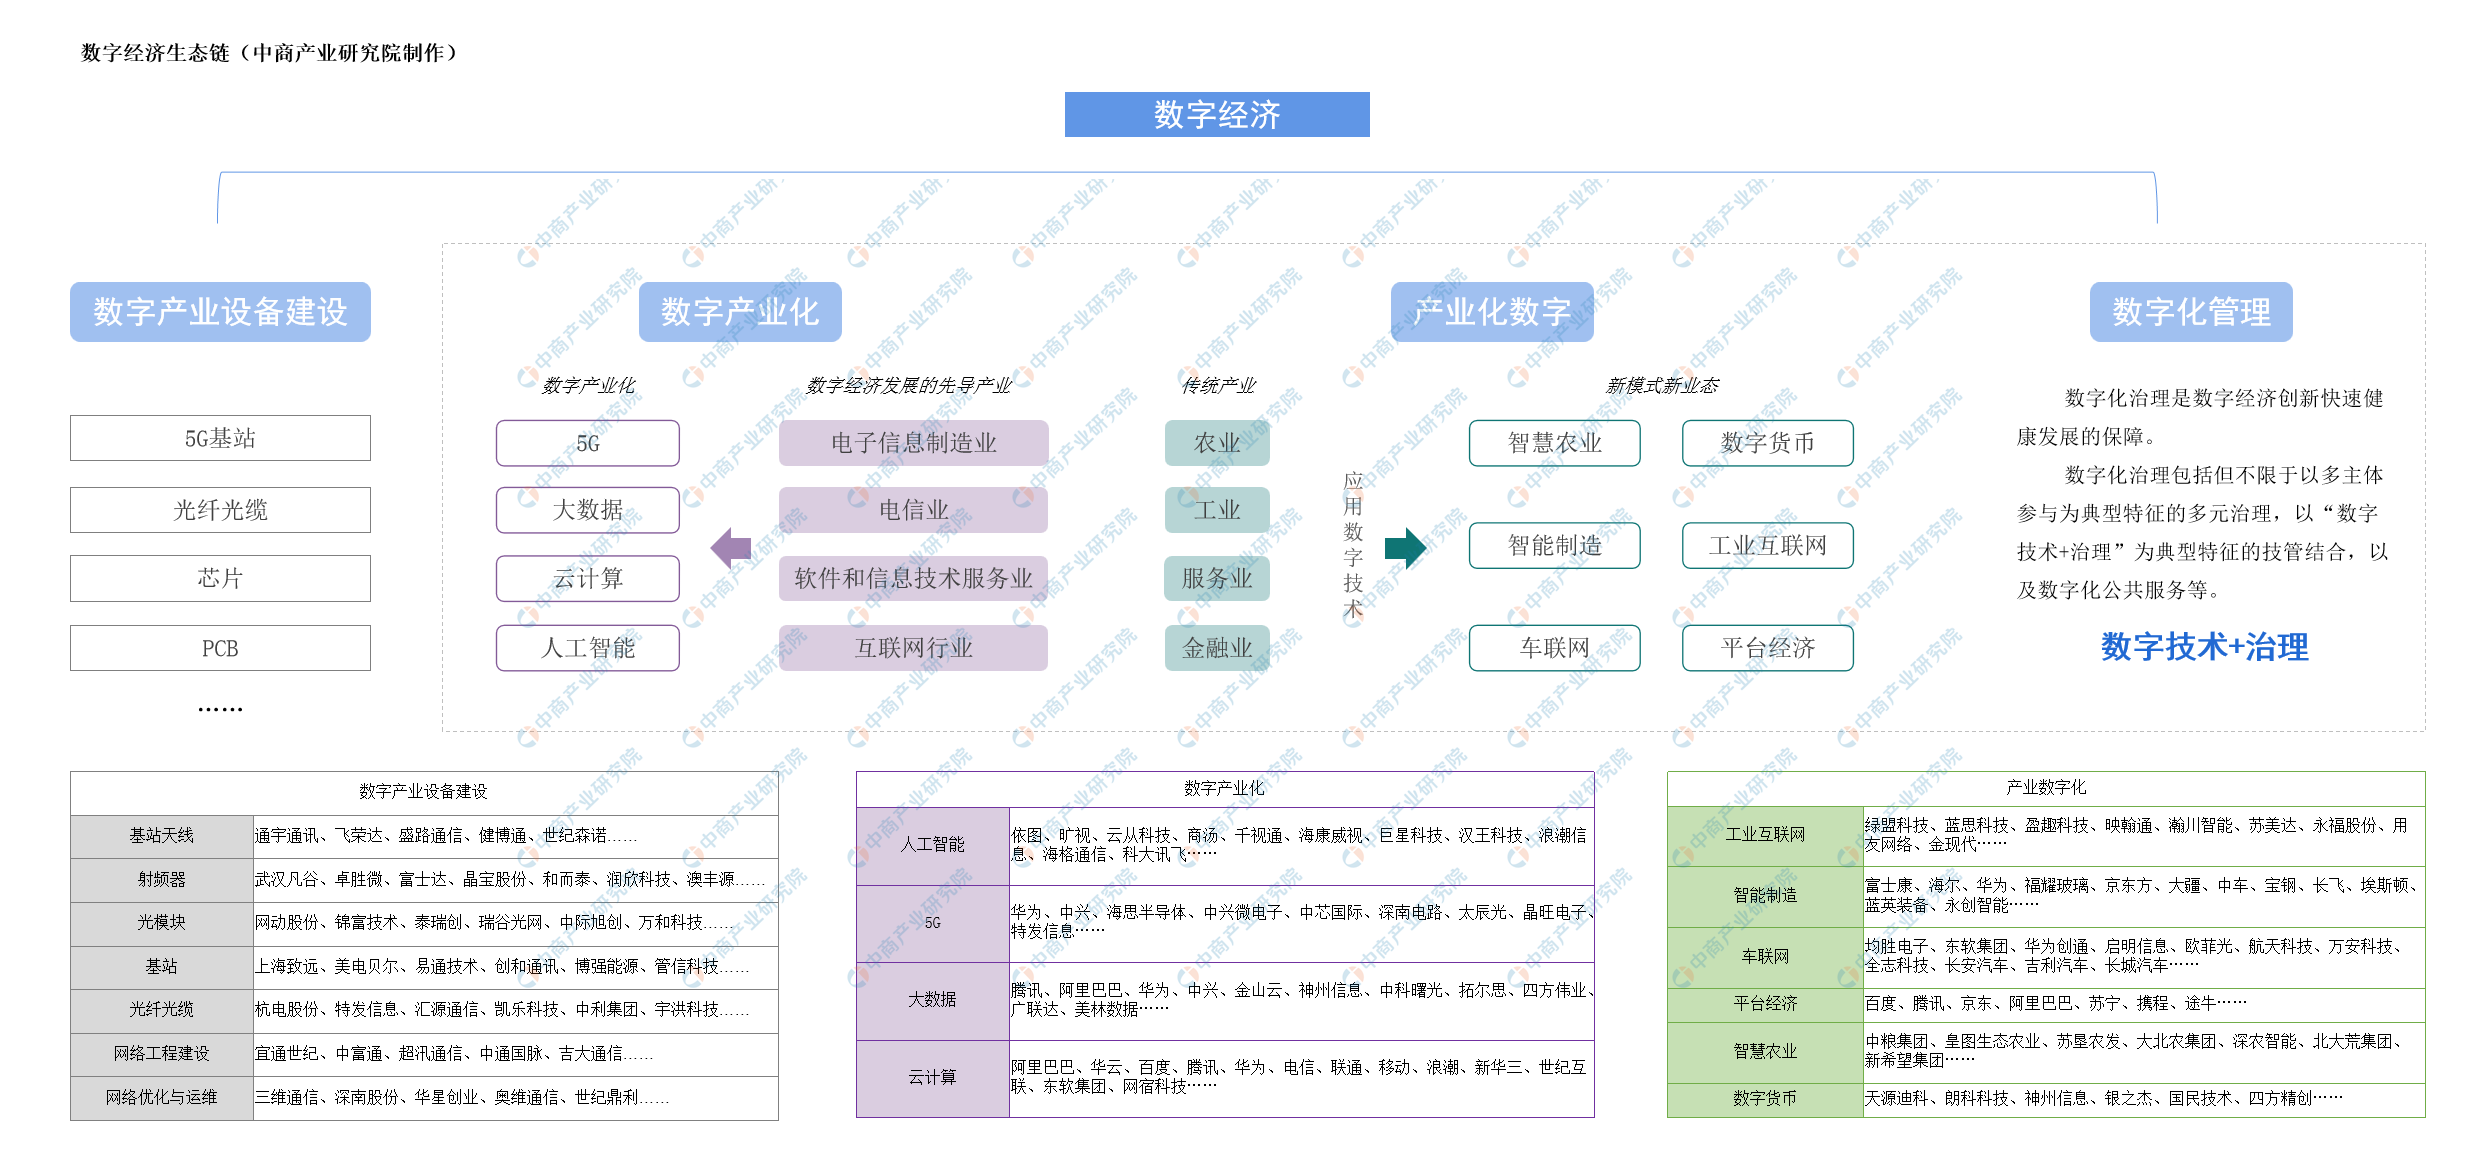 2020年中国数字经济产业链生态图谱及发展前景深度剖析（附图表）